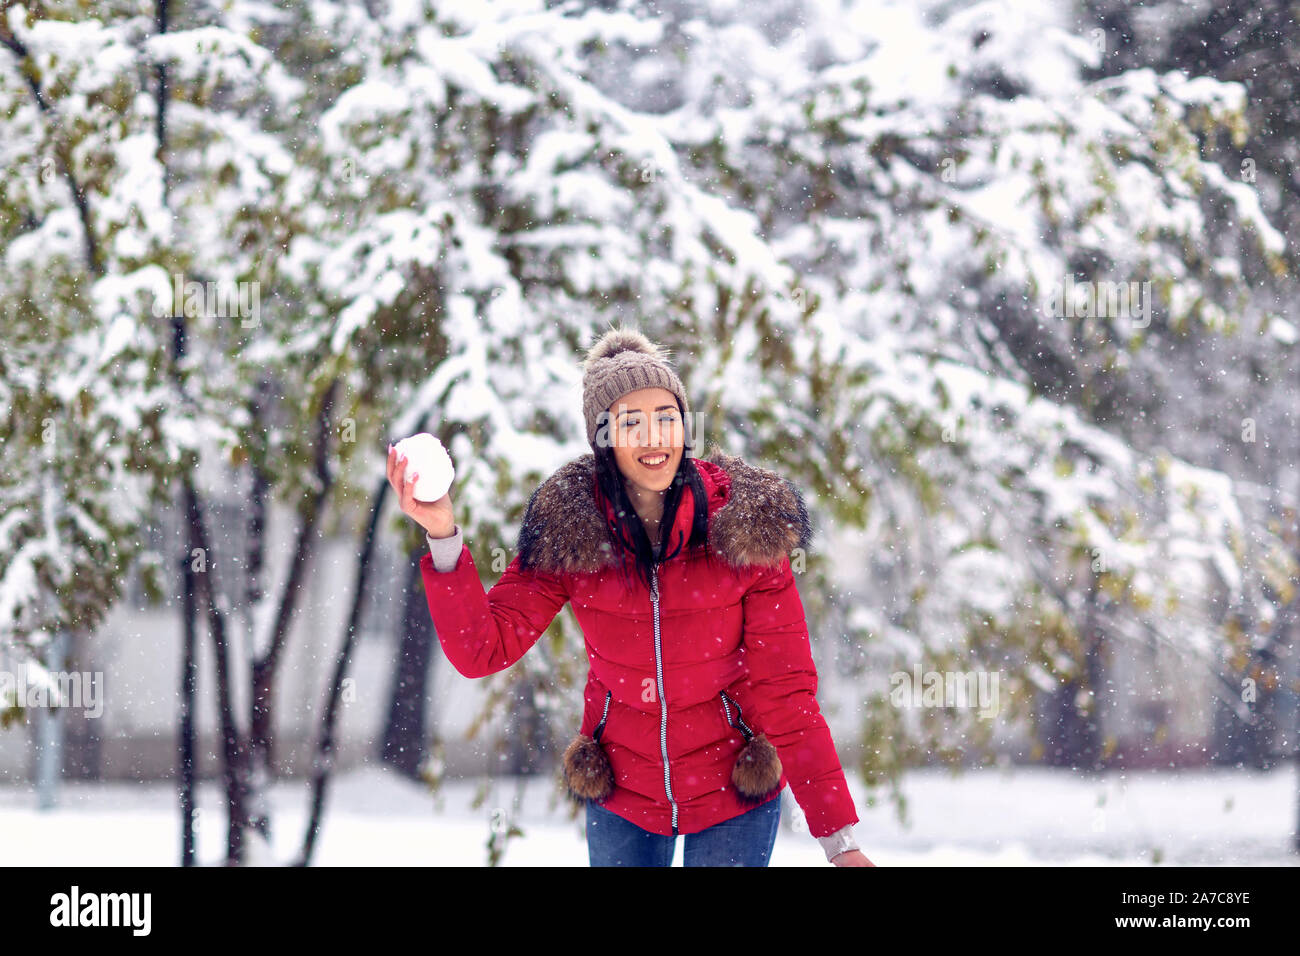 Magie d'hiver dans la neige.Happy woman throwing snowball jouer avec la neige sur journée d'hiver. Banque D'Images